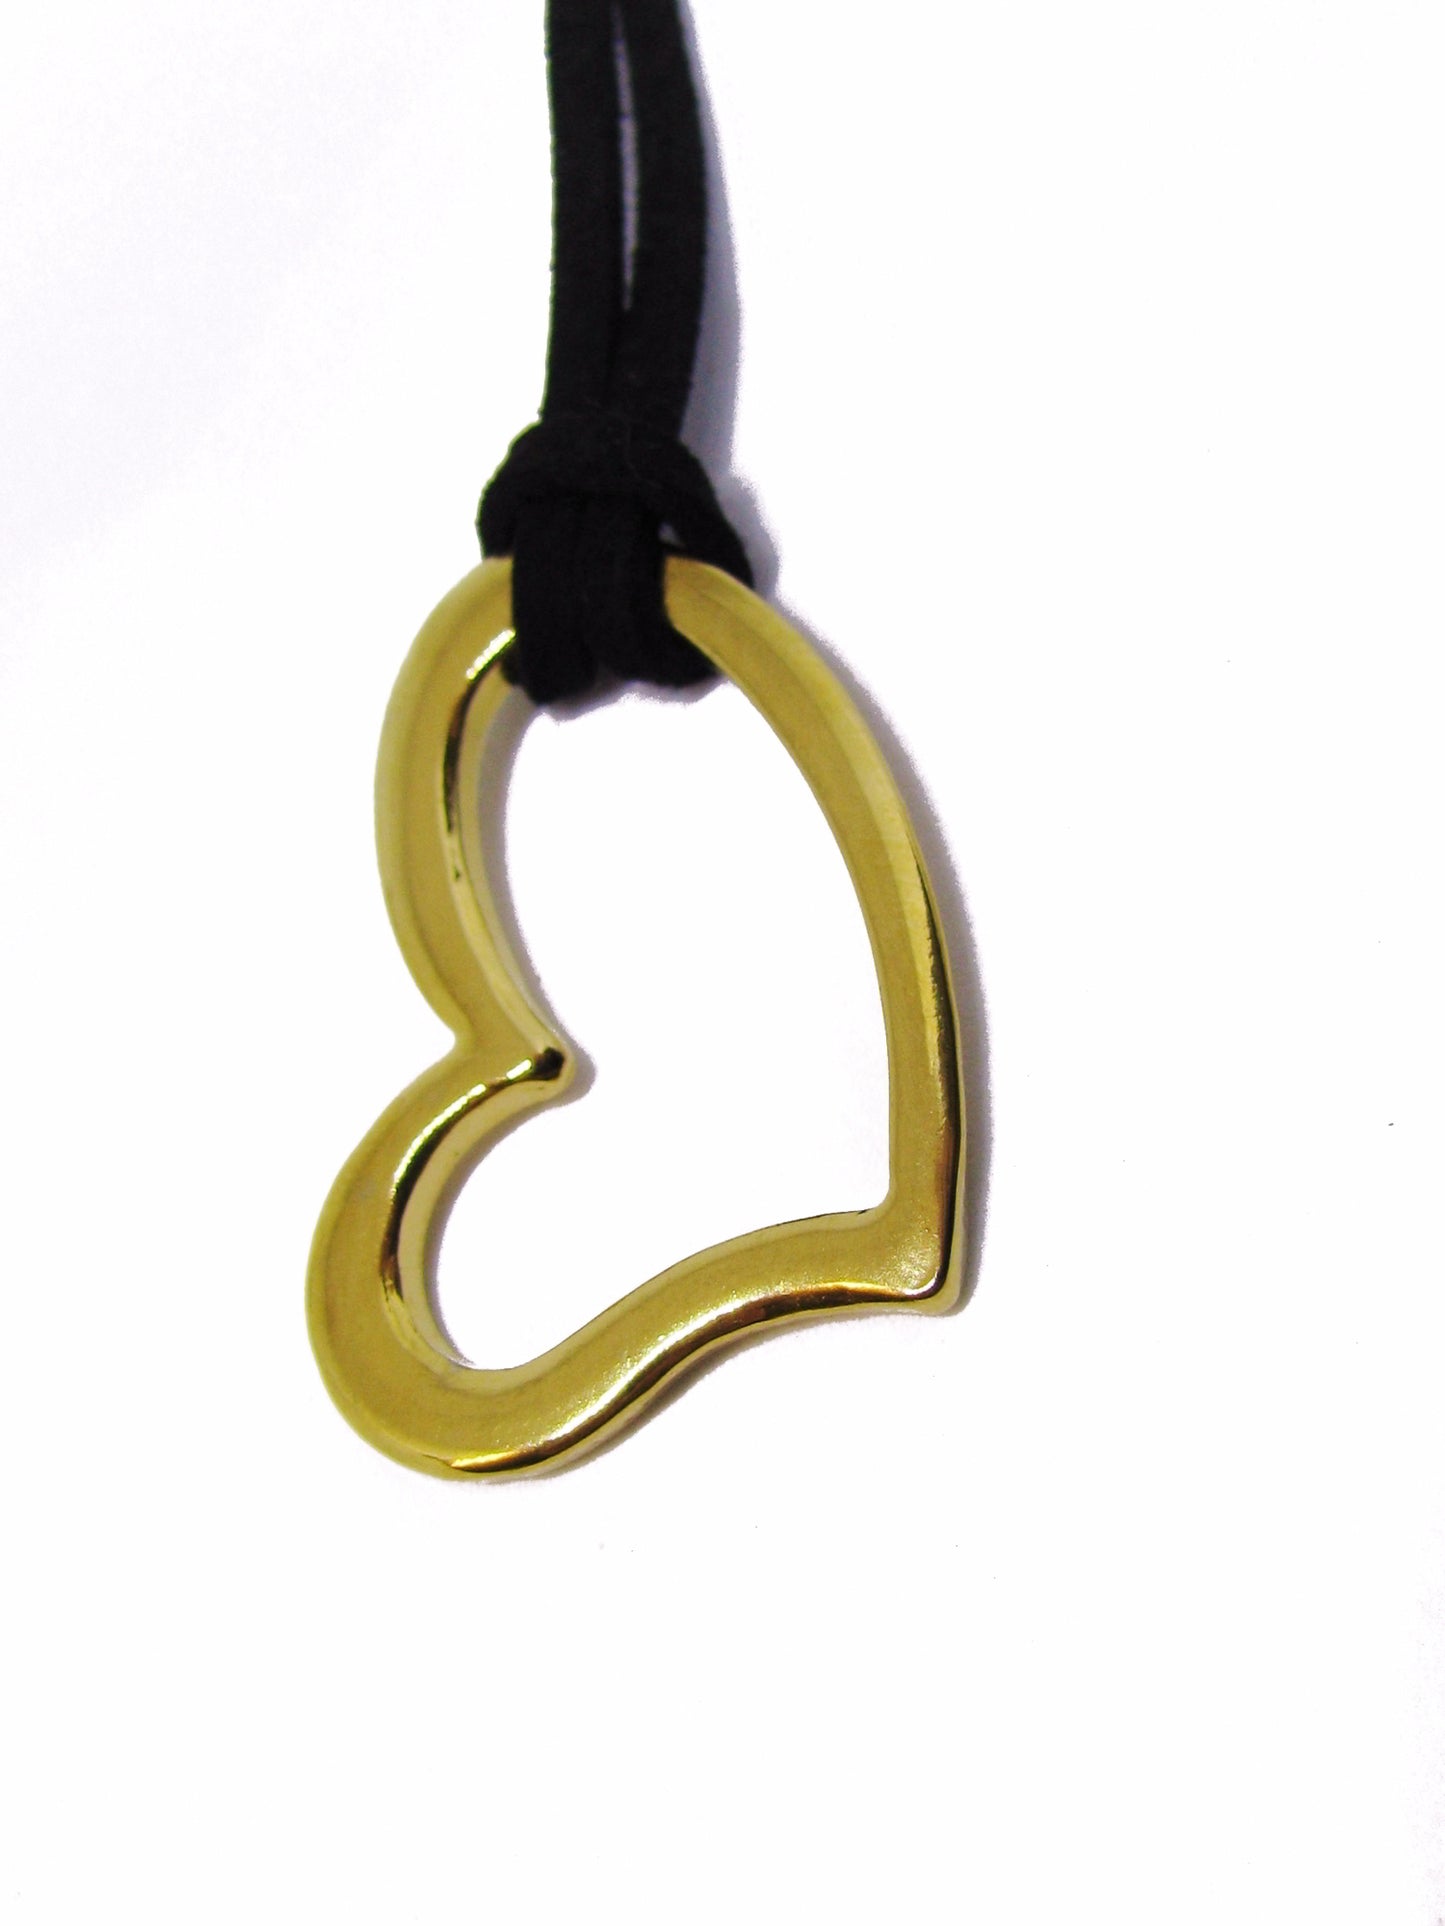 Edelstahl Anhänger Herz silberfarben 3,4 cm, für Lederband oder Kette und Charm